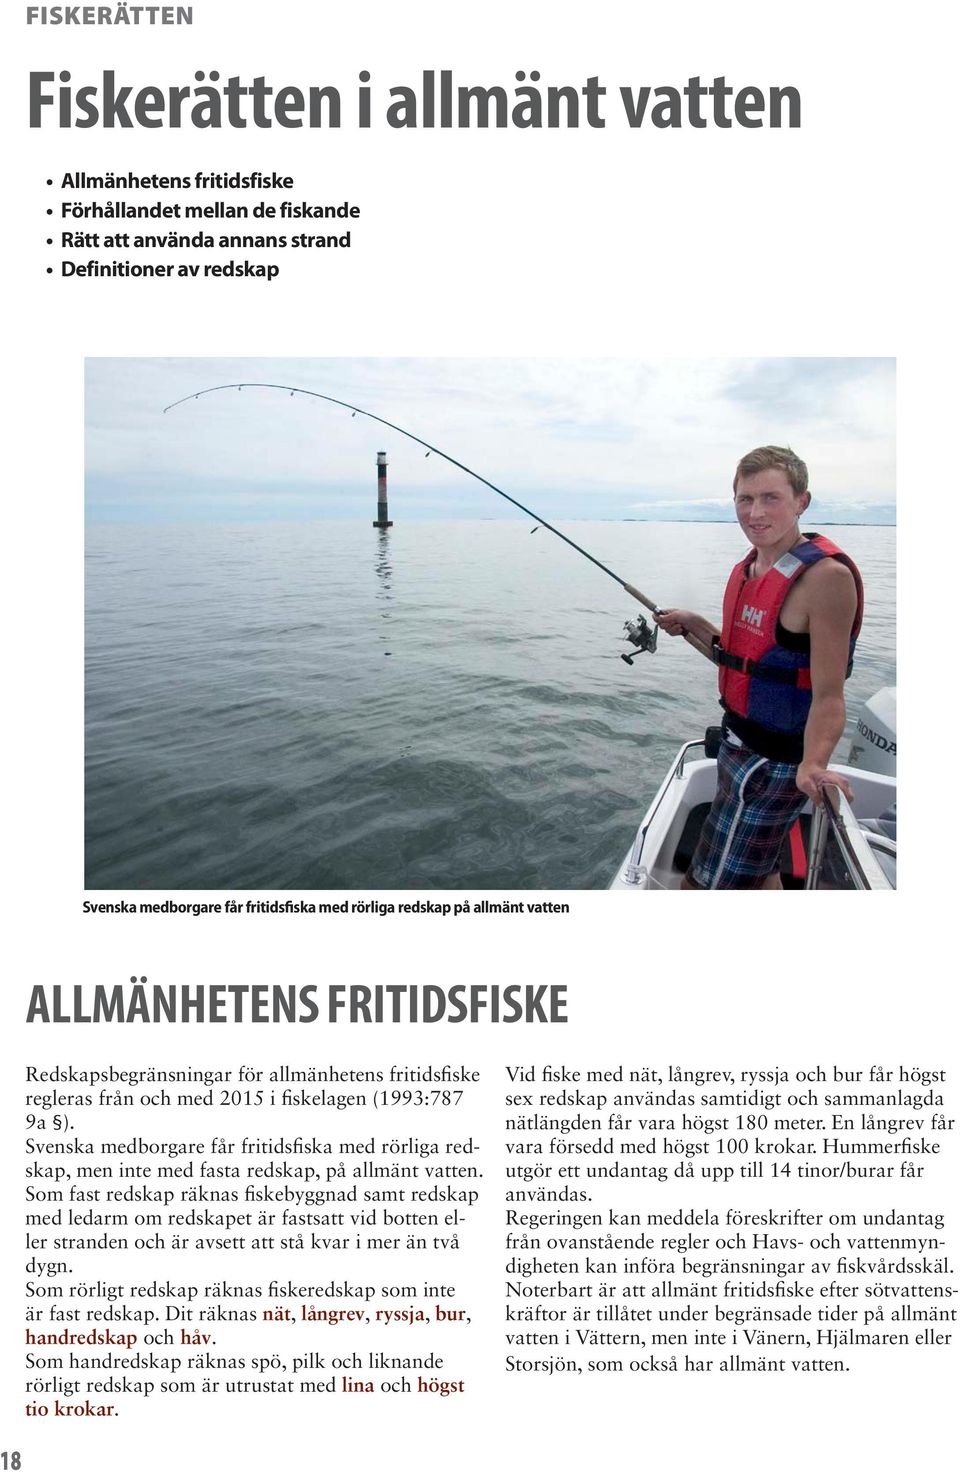 Svenska medborgare får fritidsfiska med rörliga redskap, men inte med fasta redskap, på allmänt vatten.